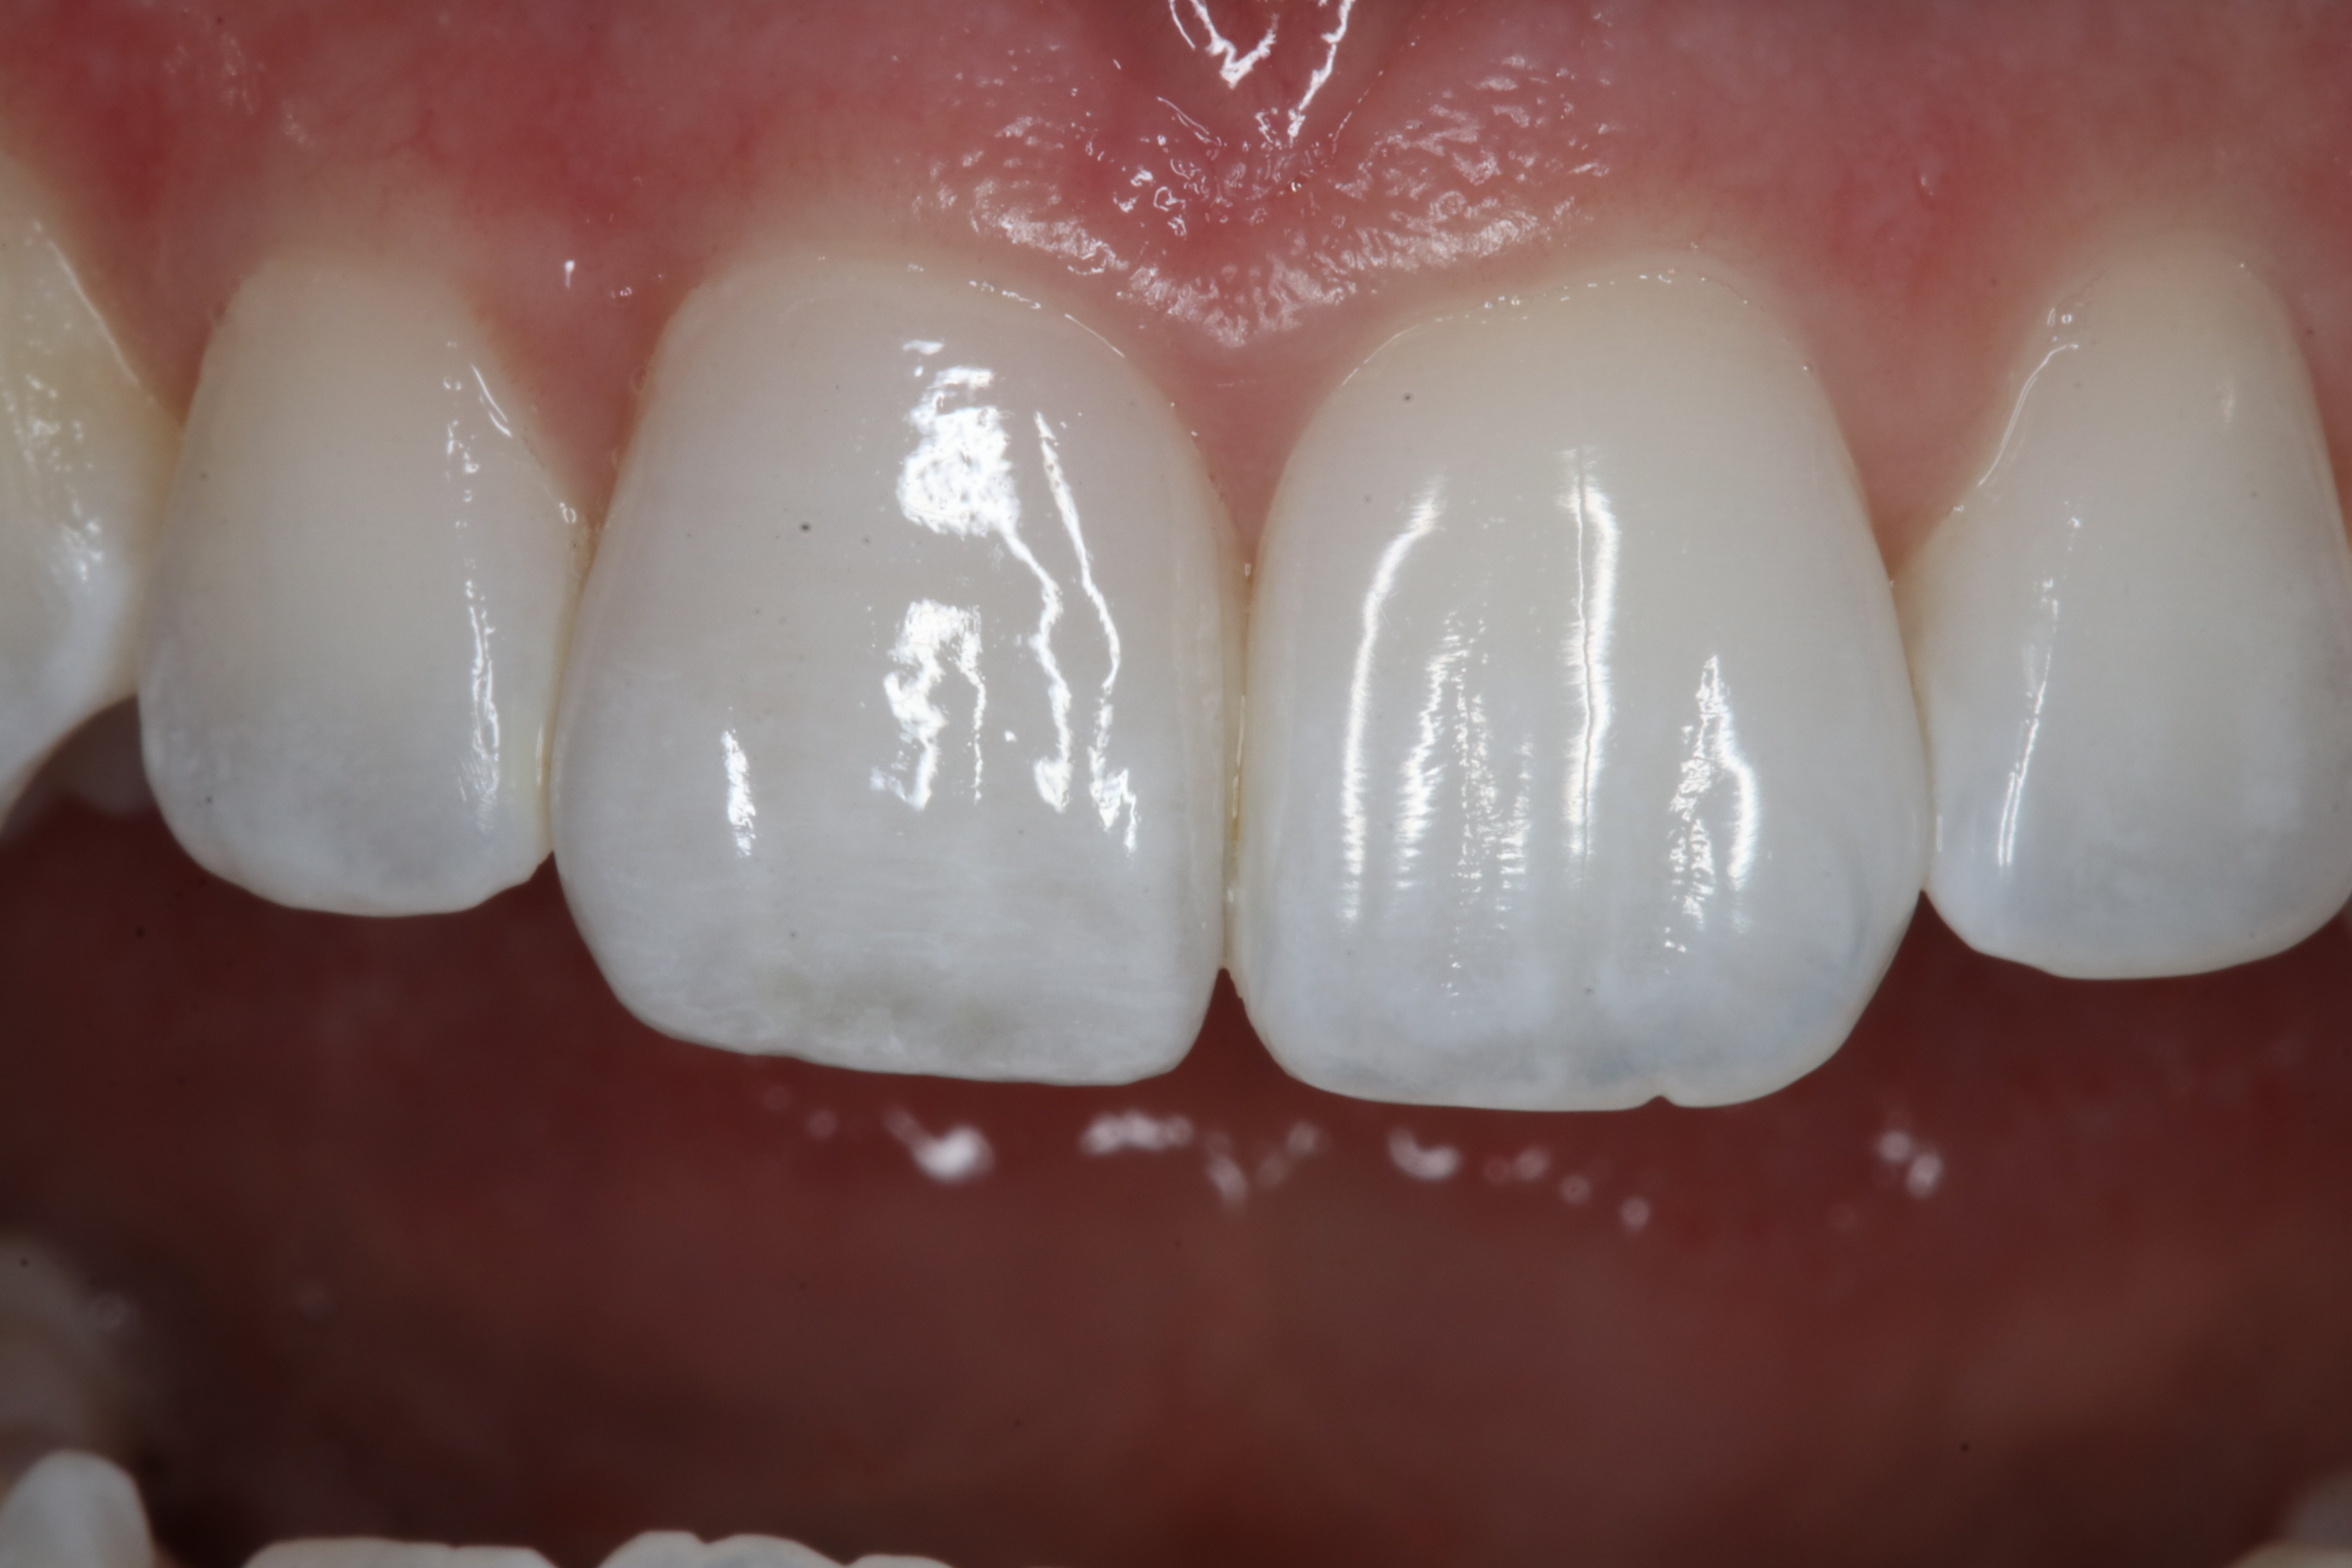 Porcelain veneer incredibly life like dental restoration for a smile makeover